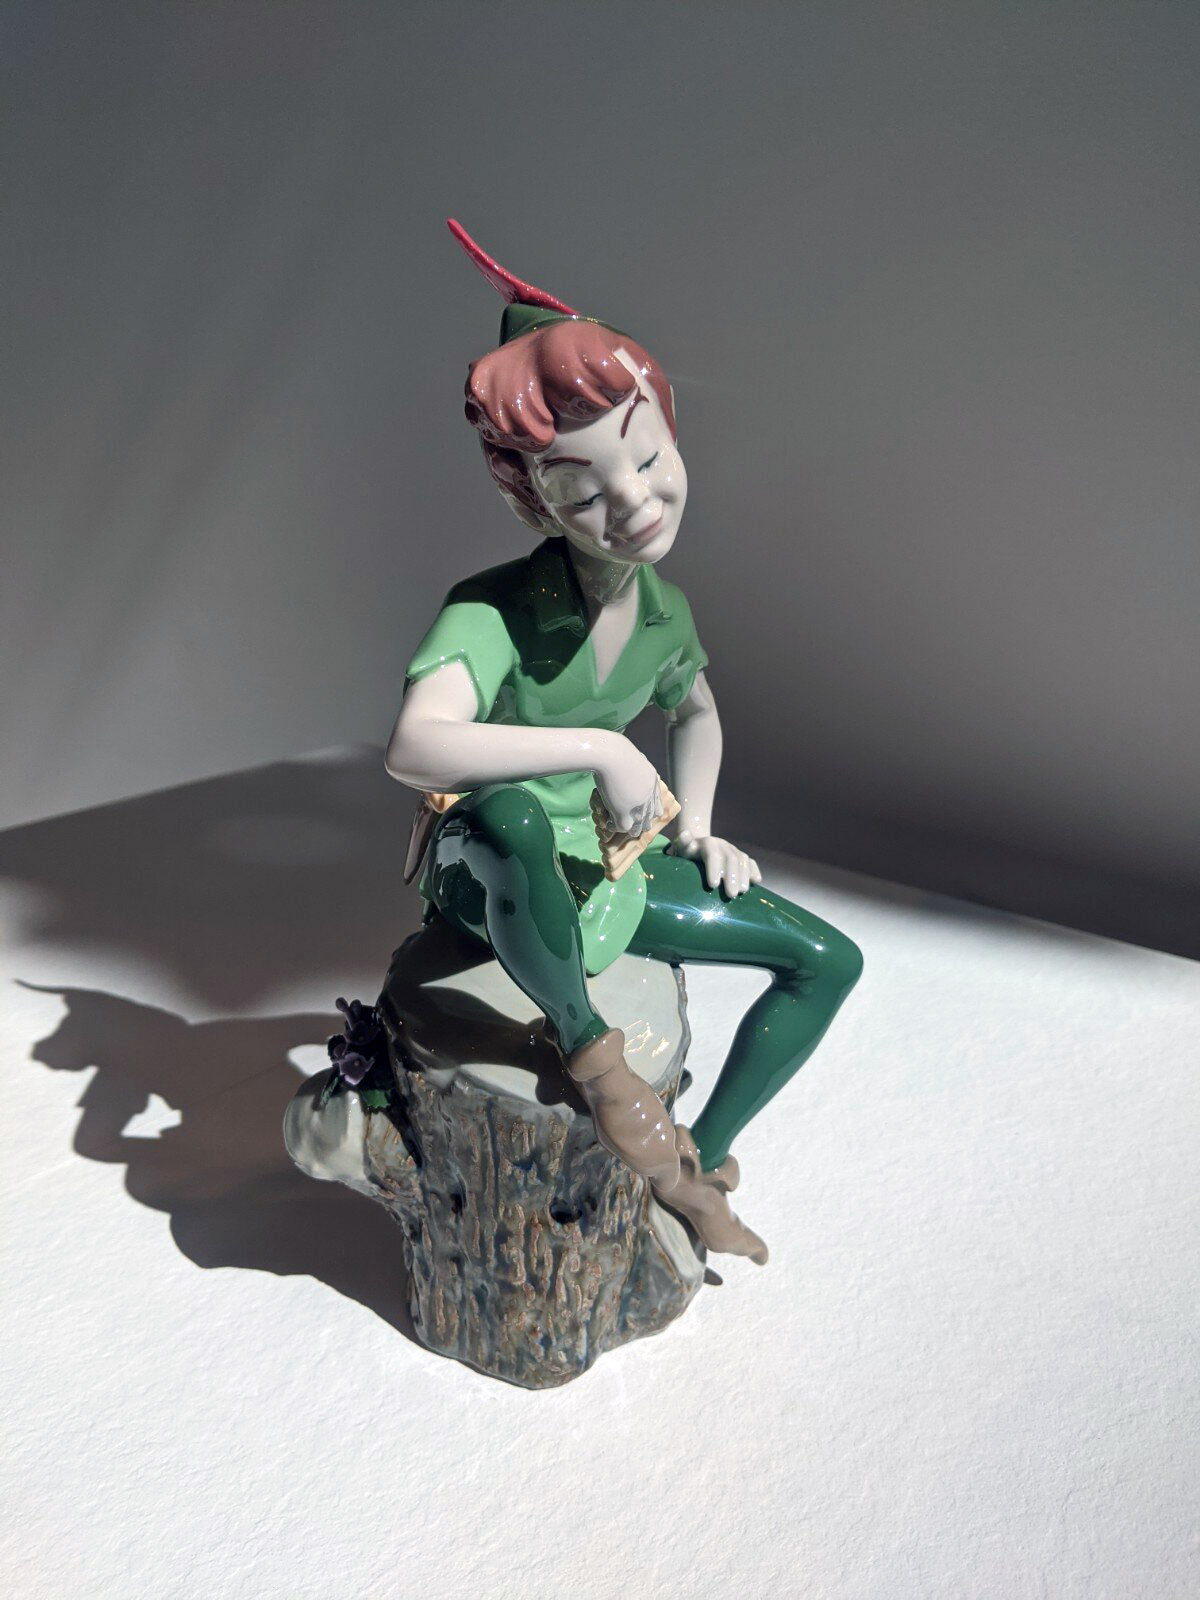 Official Peter Pan Sculpture - FormFluent